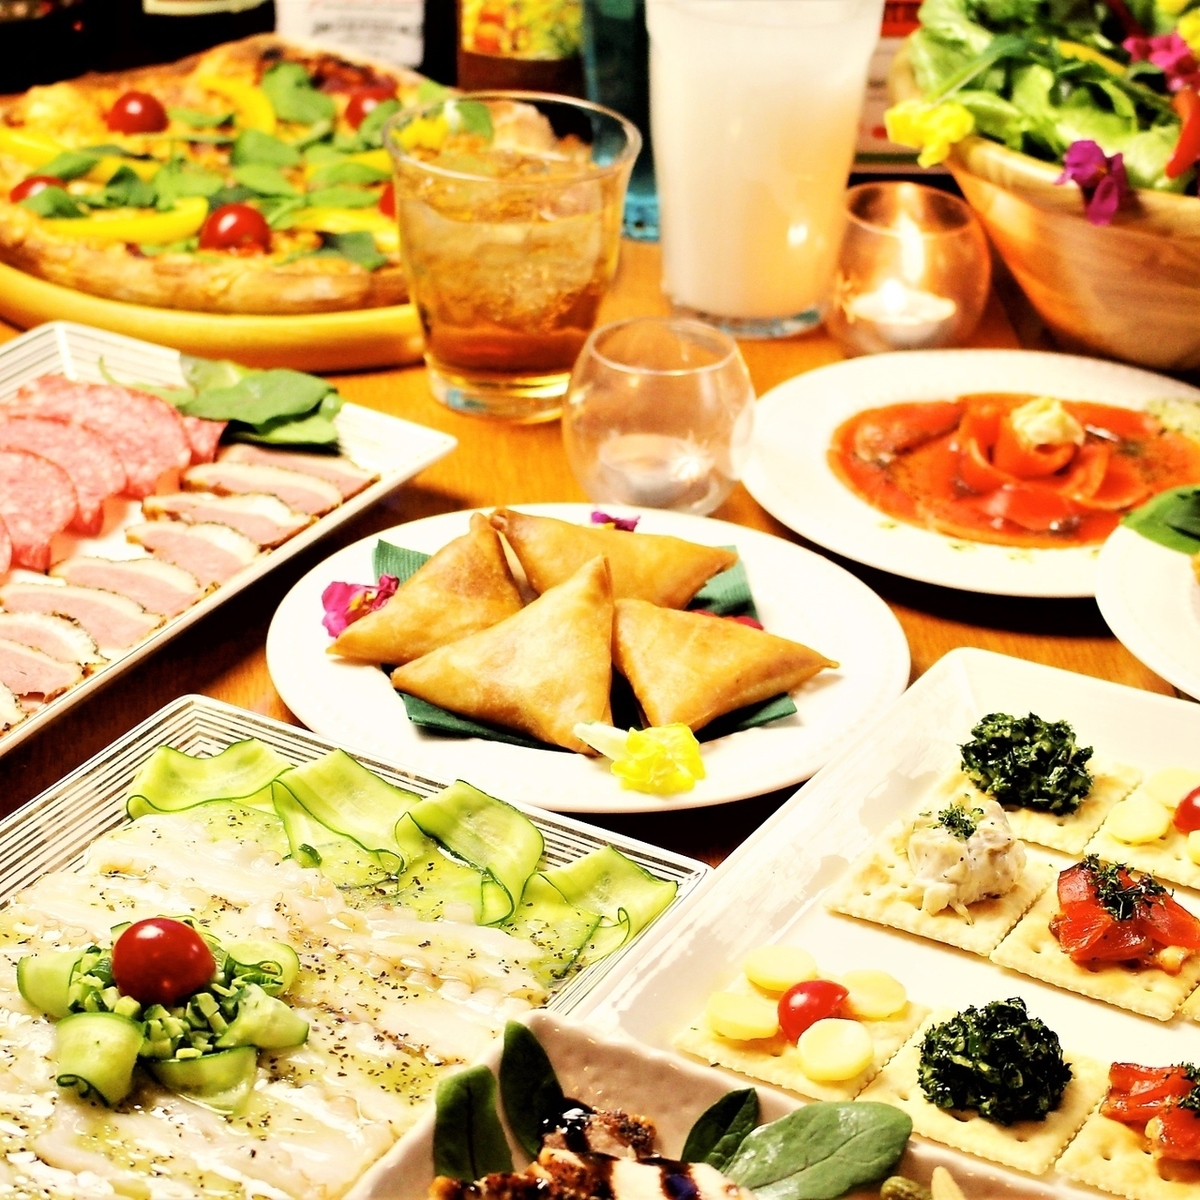 涩谷的私人促销派对便宜又美味的套餐令人满意